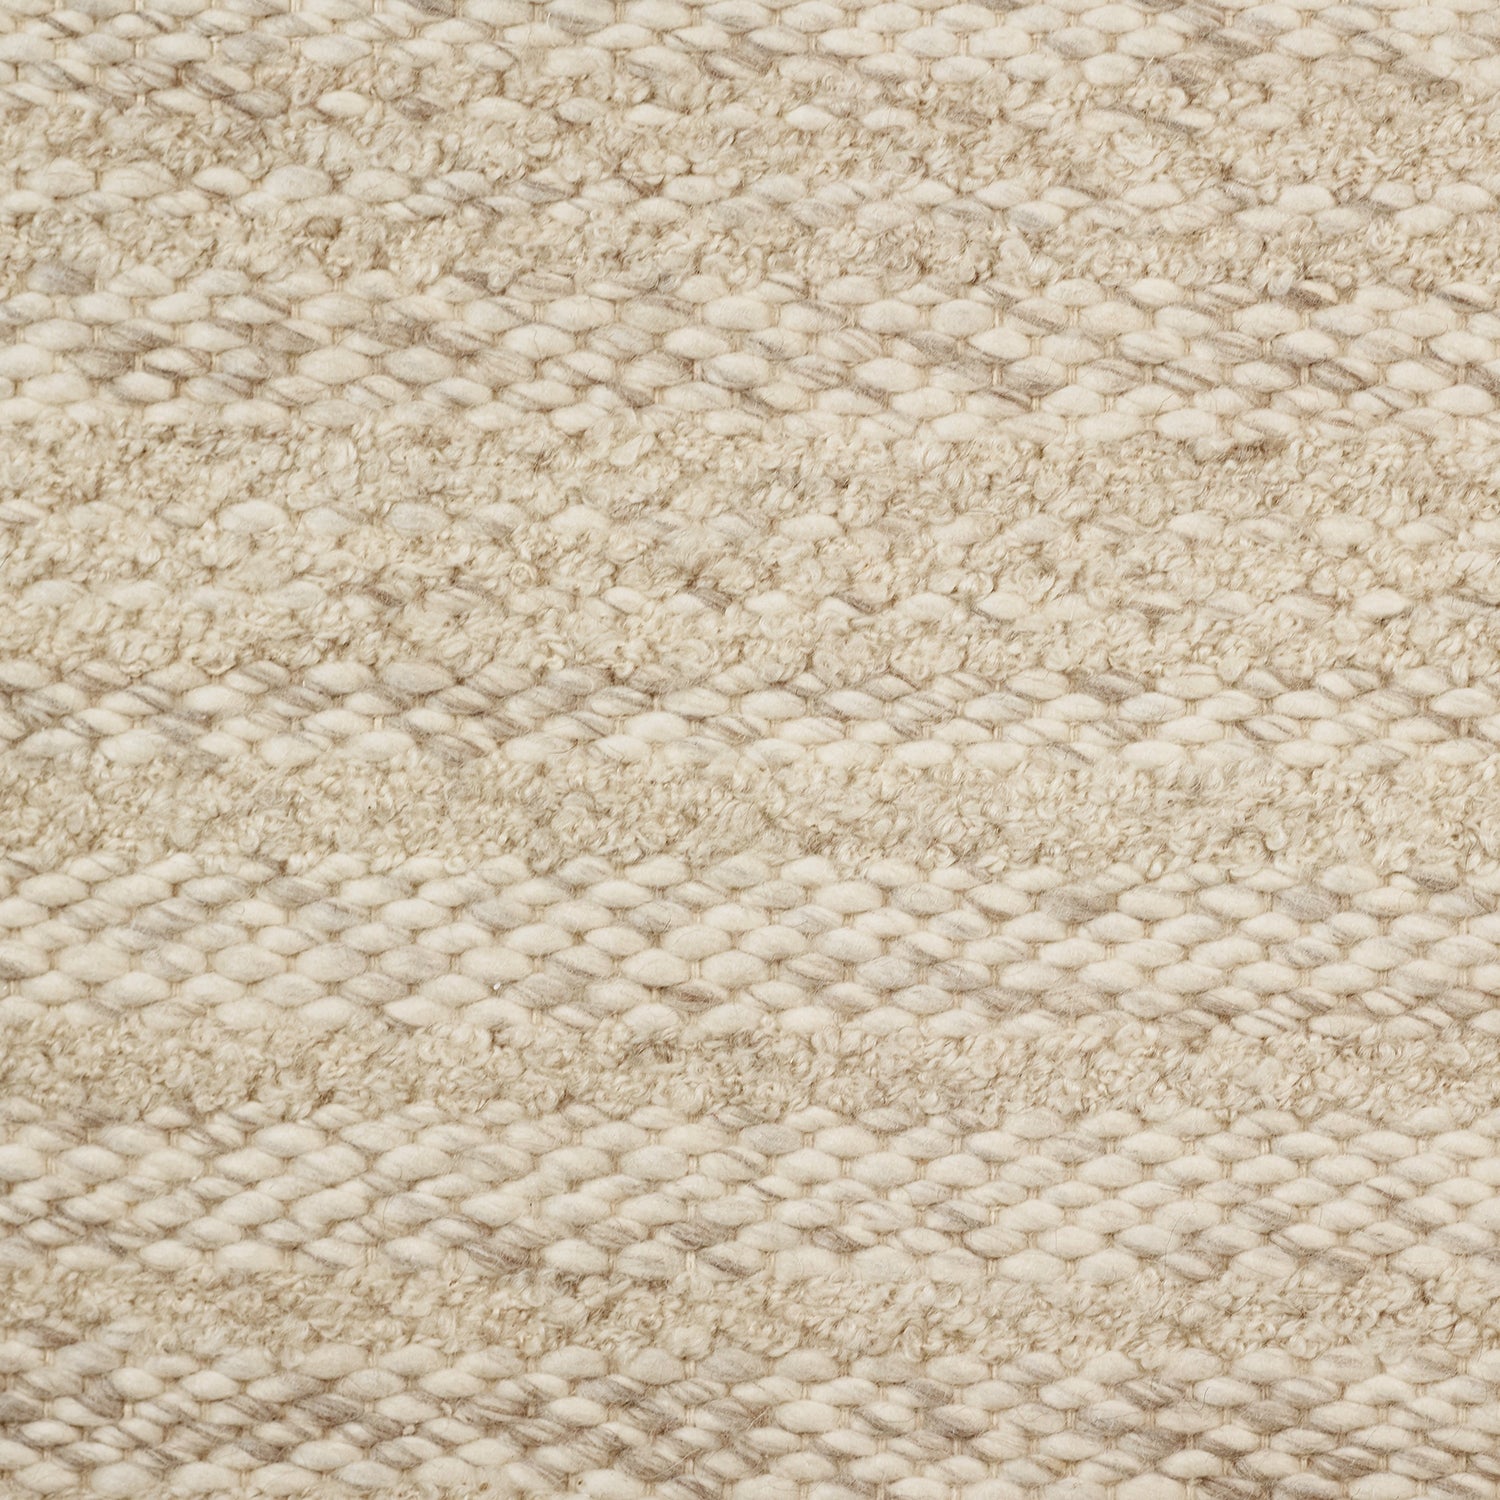 Wool broadloom carpet swatch in a textured stripe weave in tan.